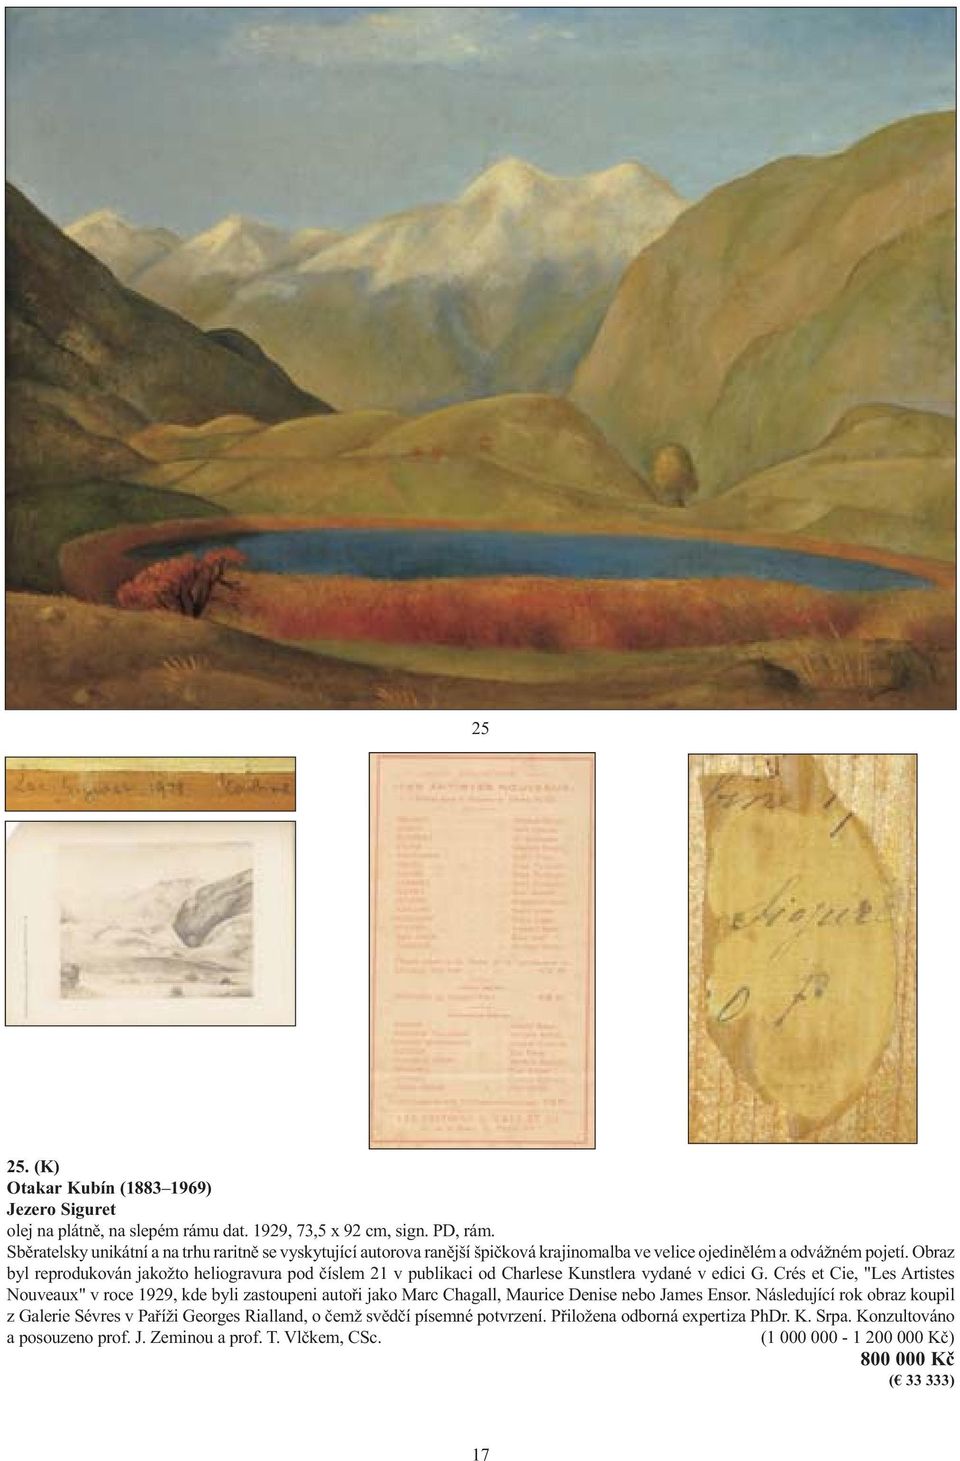 Obraz byl reprodukován jakožto heliogravura pod číslem 21 v publikaci od Charlese Kunstlera vydané v edici G.